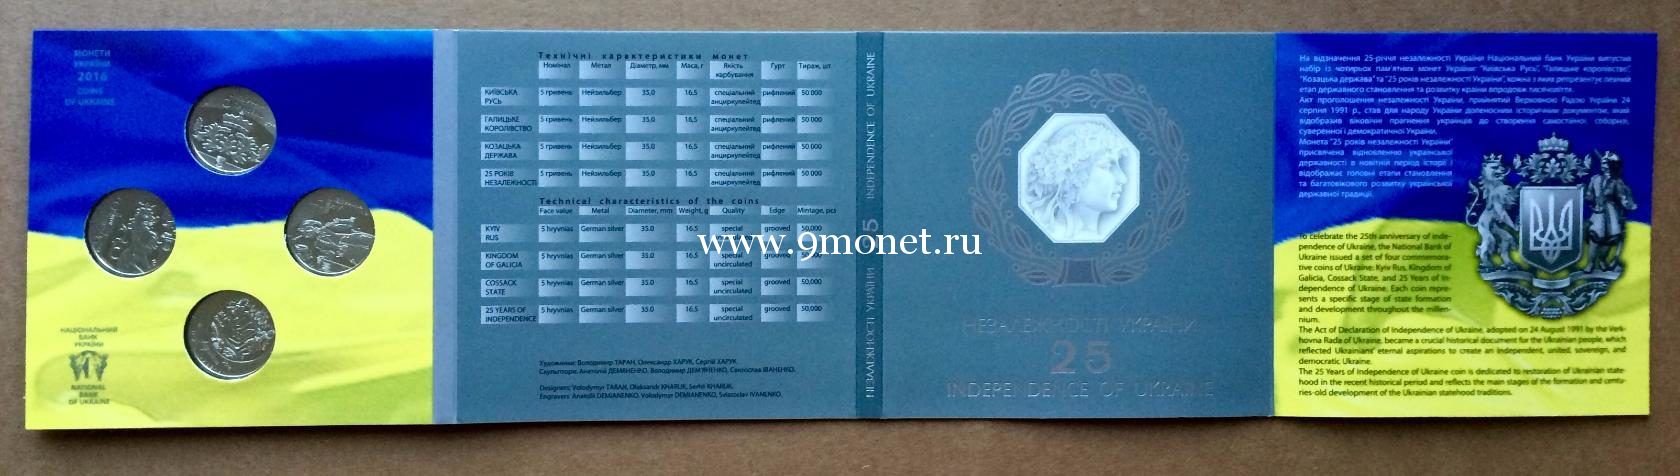 Монета Украины 2016 год. 5 гривен. 25 лет Независимости Украины. Набор 4 монеты. Блистер.